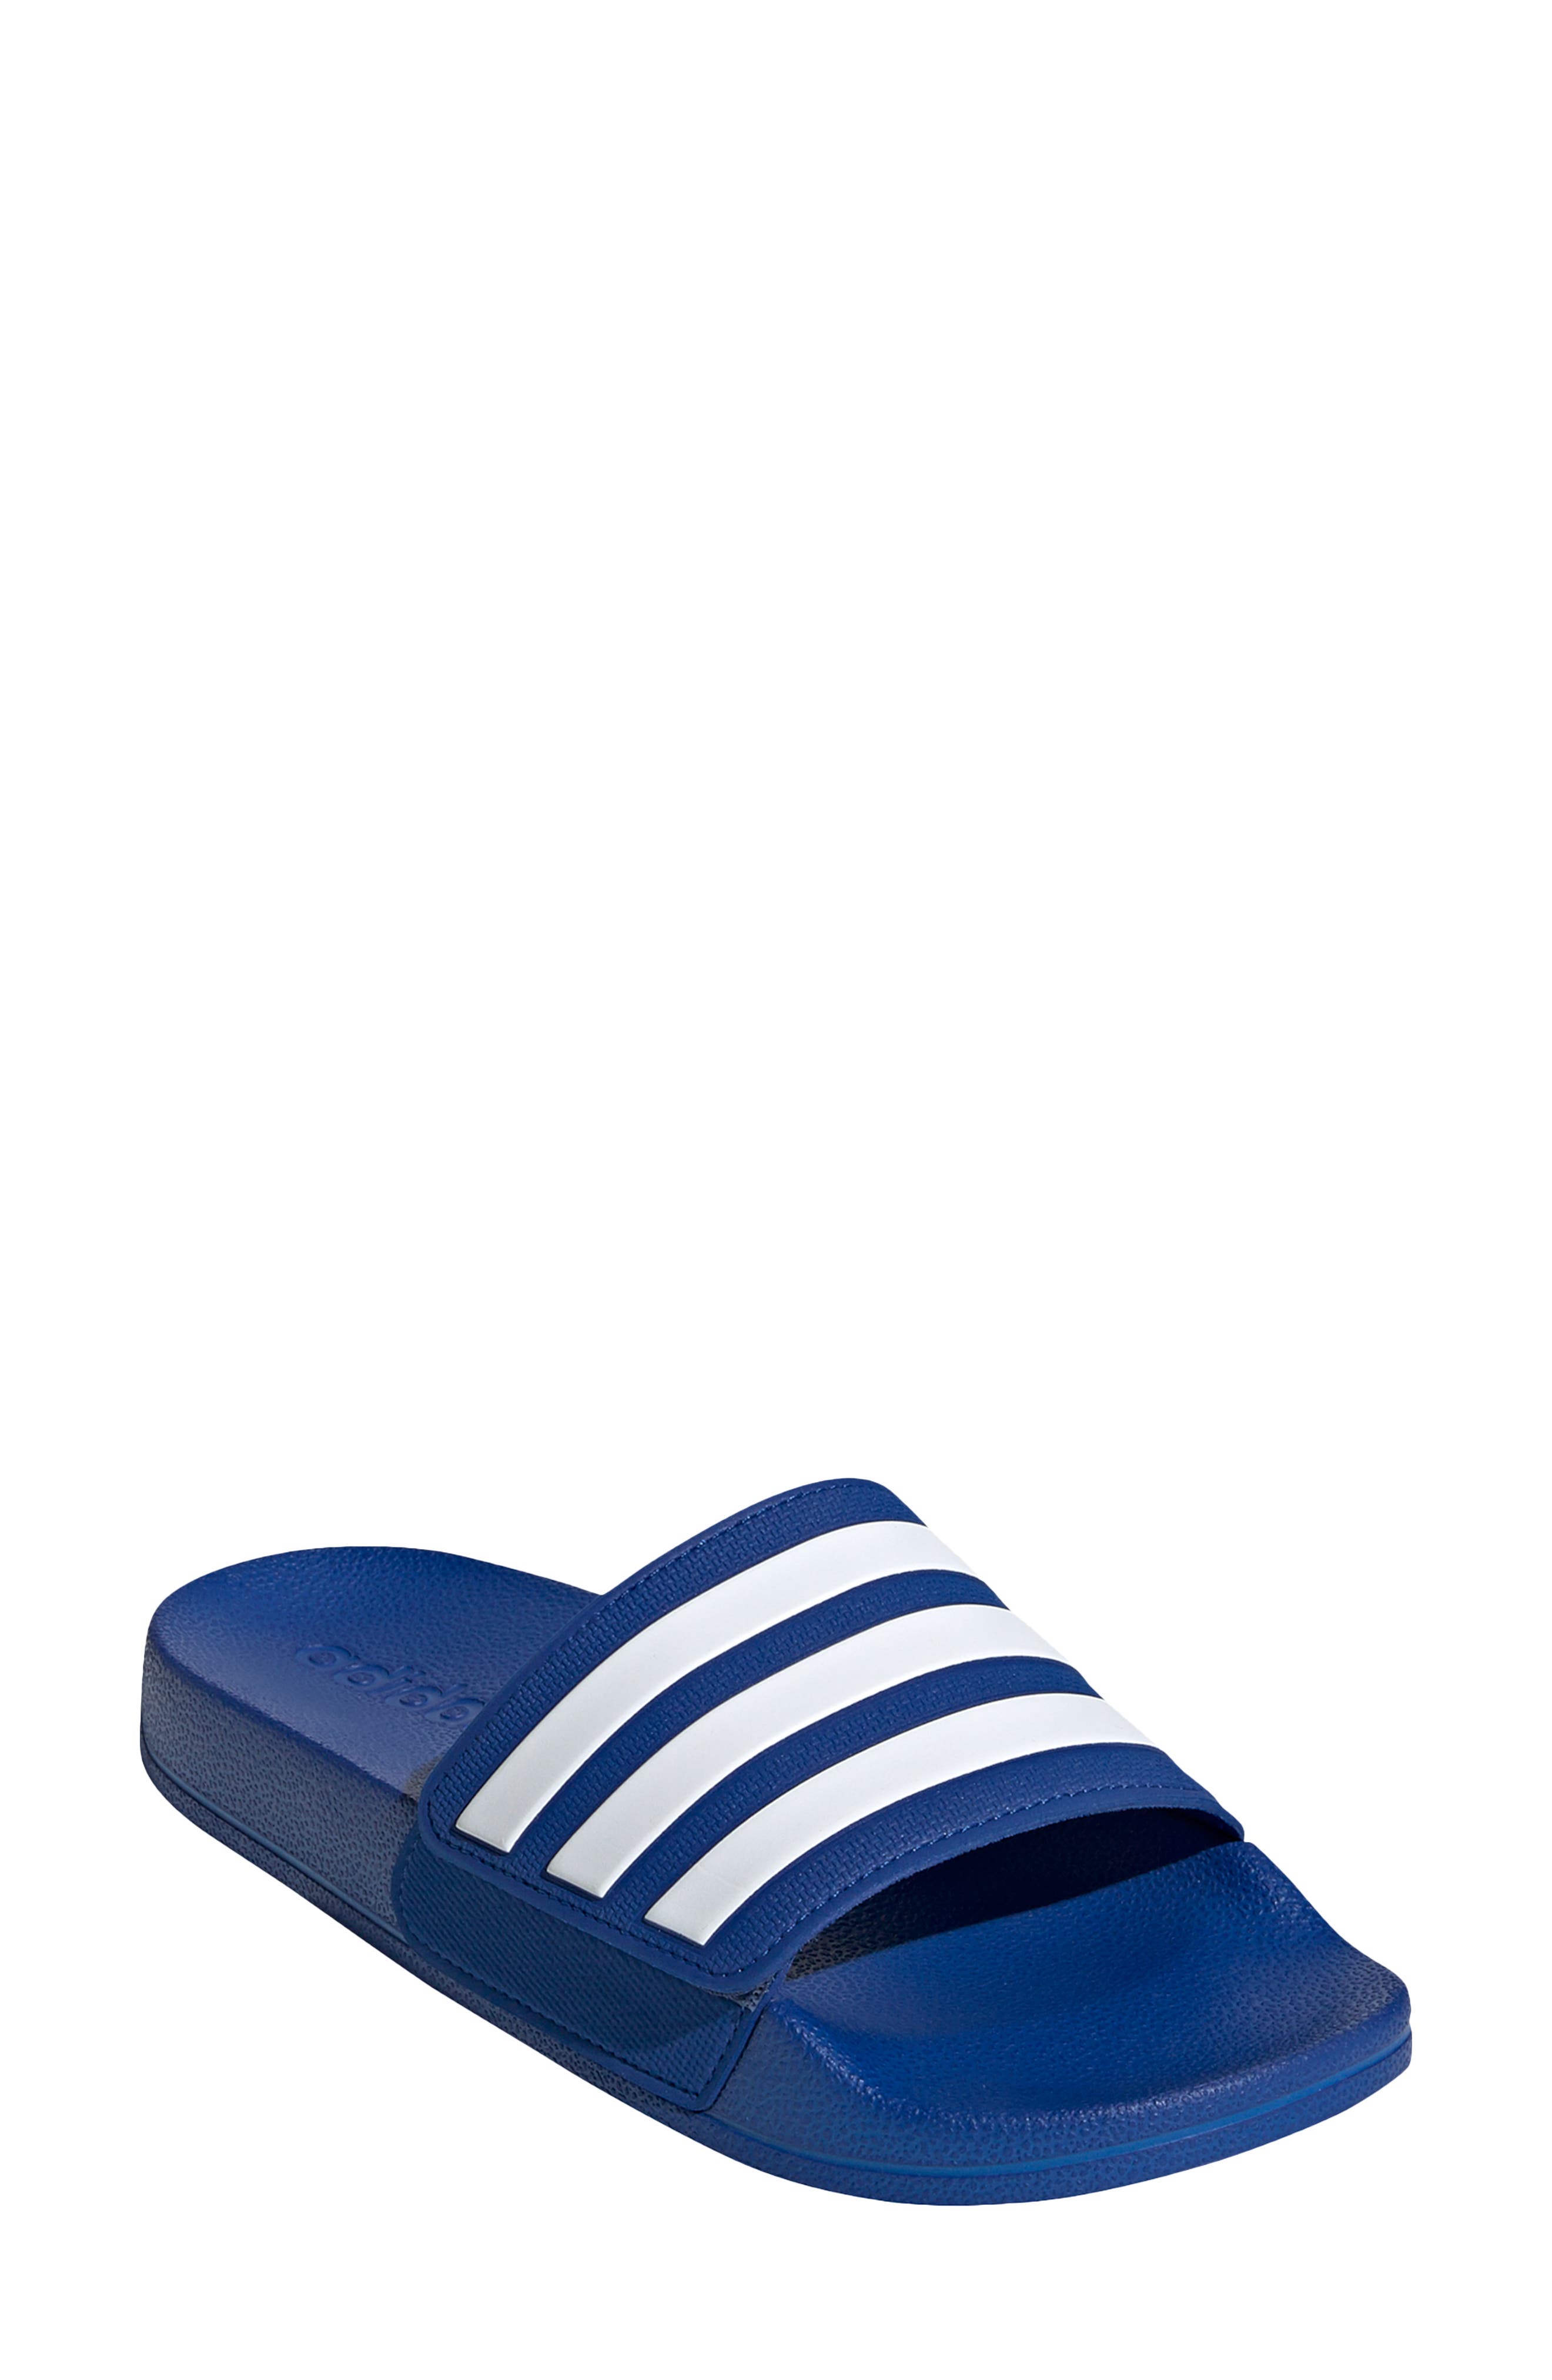 adidas toddler slide sandals